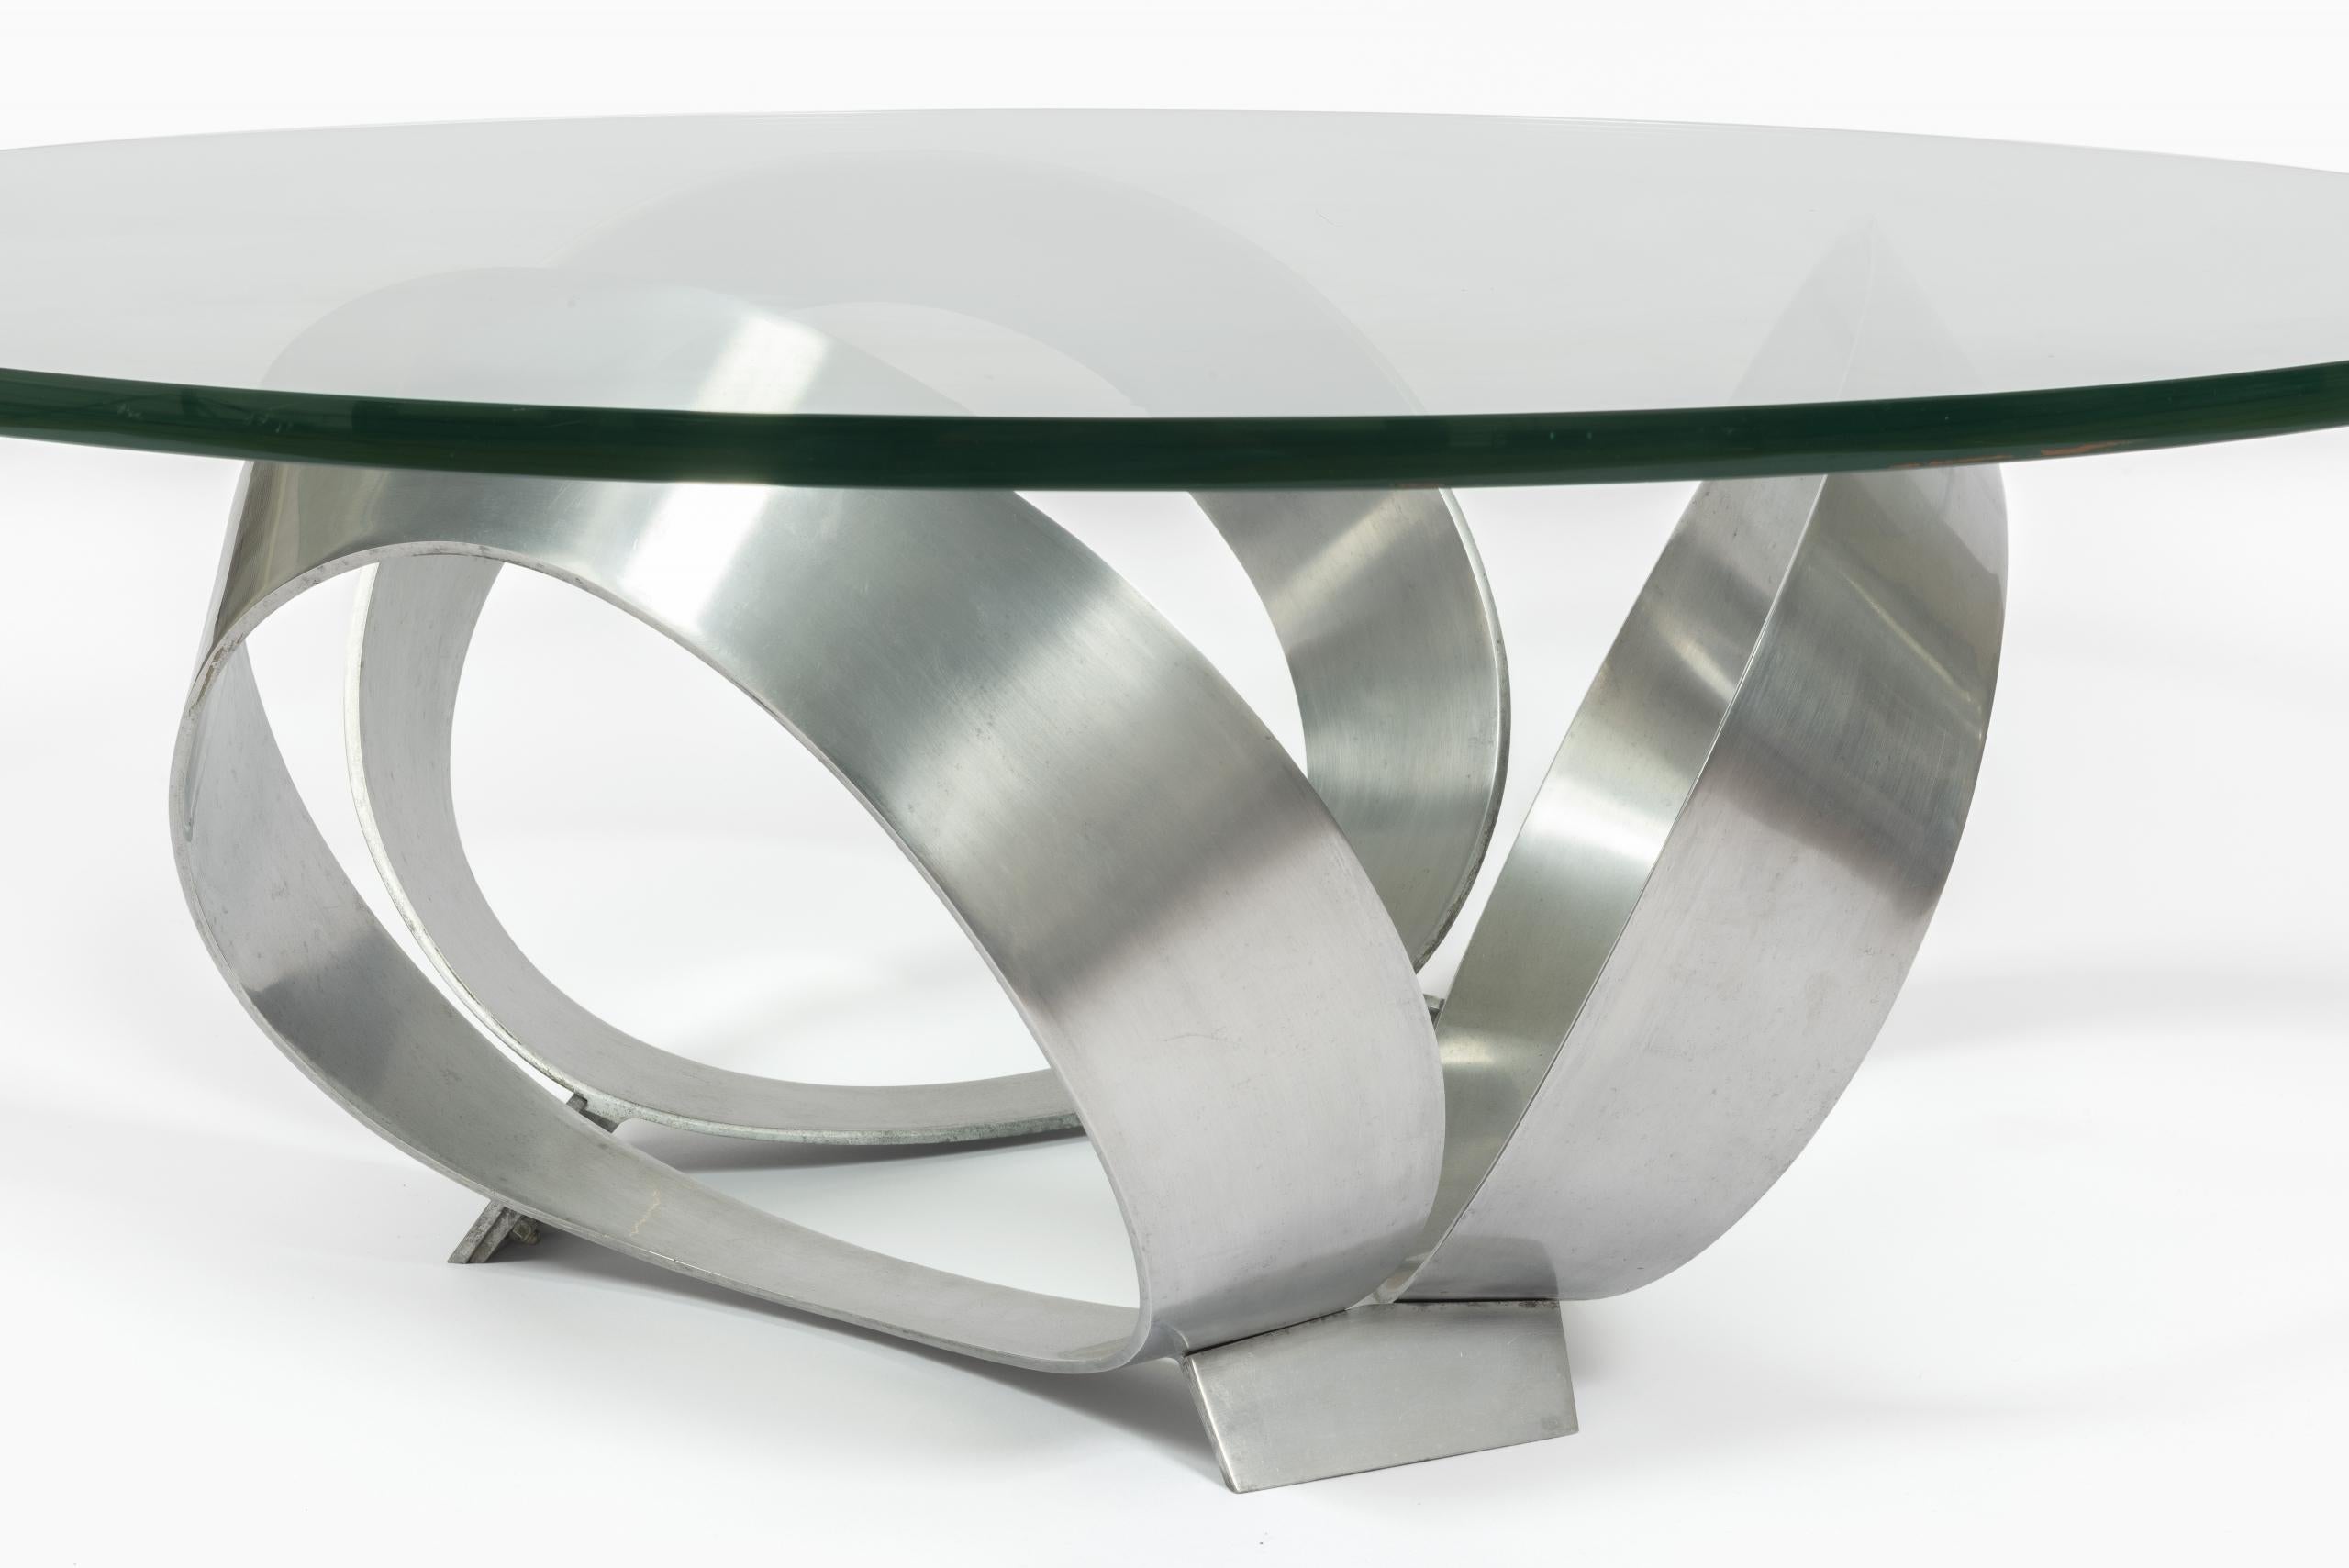 Table basse des années 1960 au design minimaliste de Knut Hesterberg pour Ronald Schmitt.

Avec base sculpturale en acier brossé et plateau en verre d'une épaisseur de 2 cm.